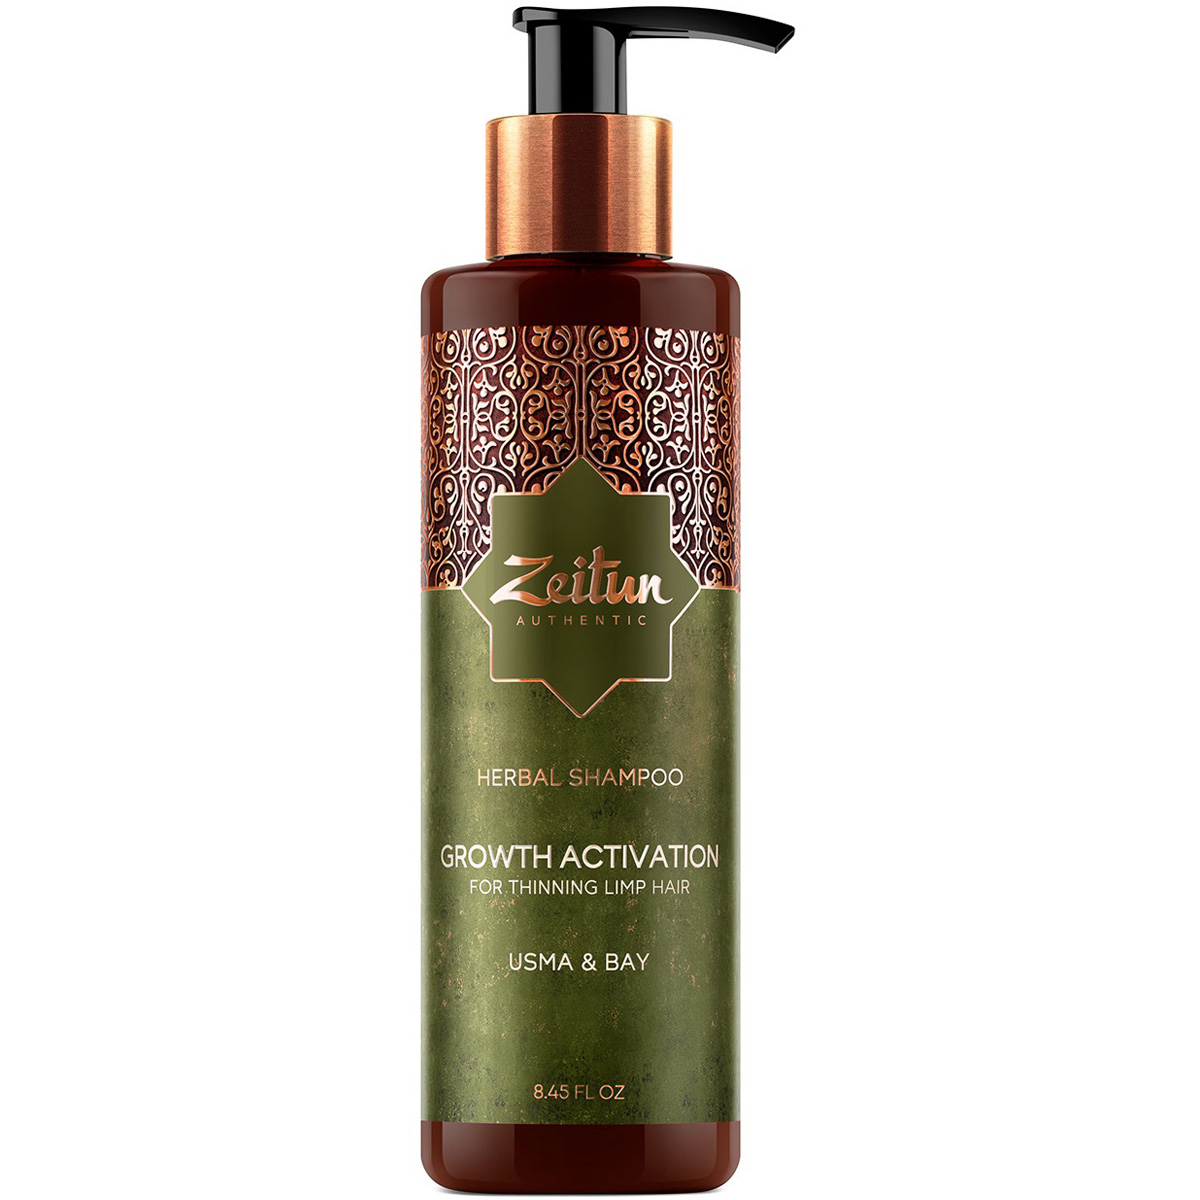 Zeitun Фито-шампунь с маслом усьмы для роста волос Growth Activation, 250 мл (Zeitun, Authentic) фито маска для роста волос zeitun с экстрактом перца 250 мл